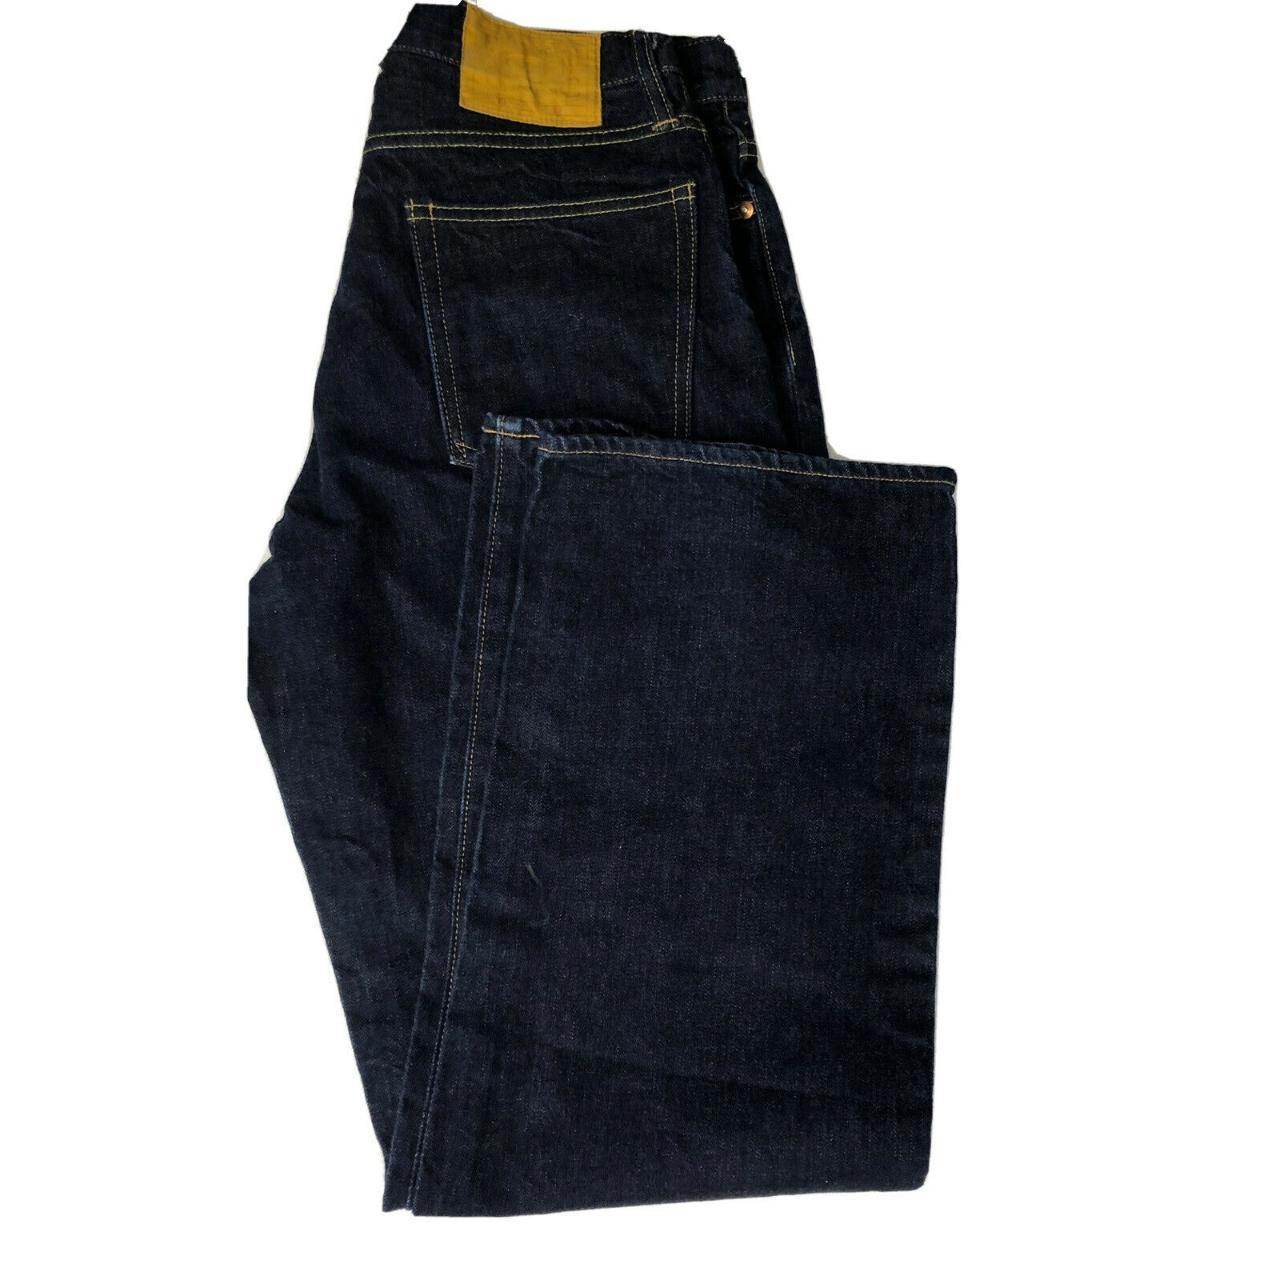 Old Hands Mens 30x32 Blue Denim Jeans Straight Depop